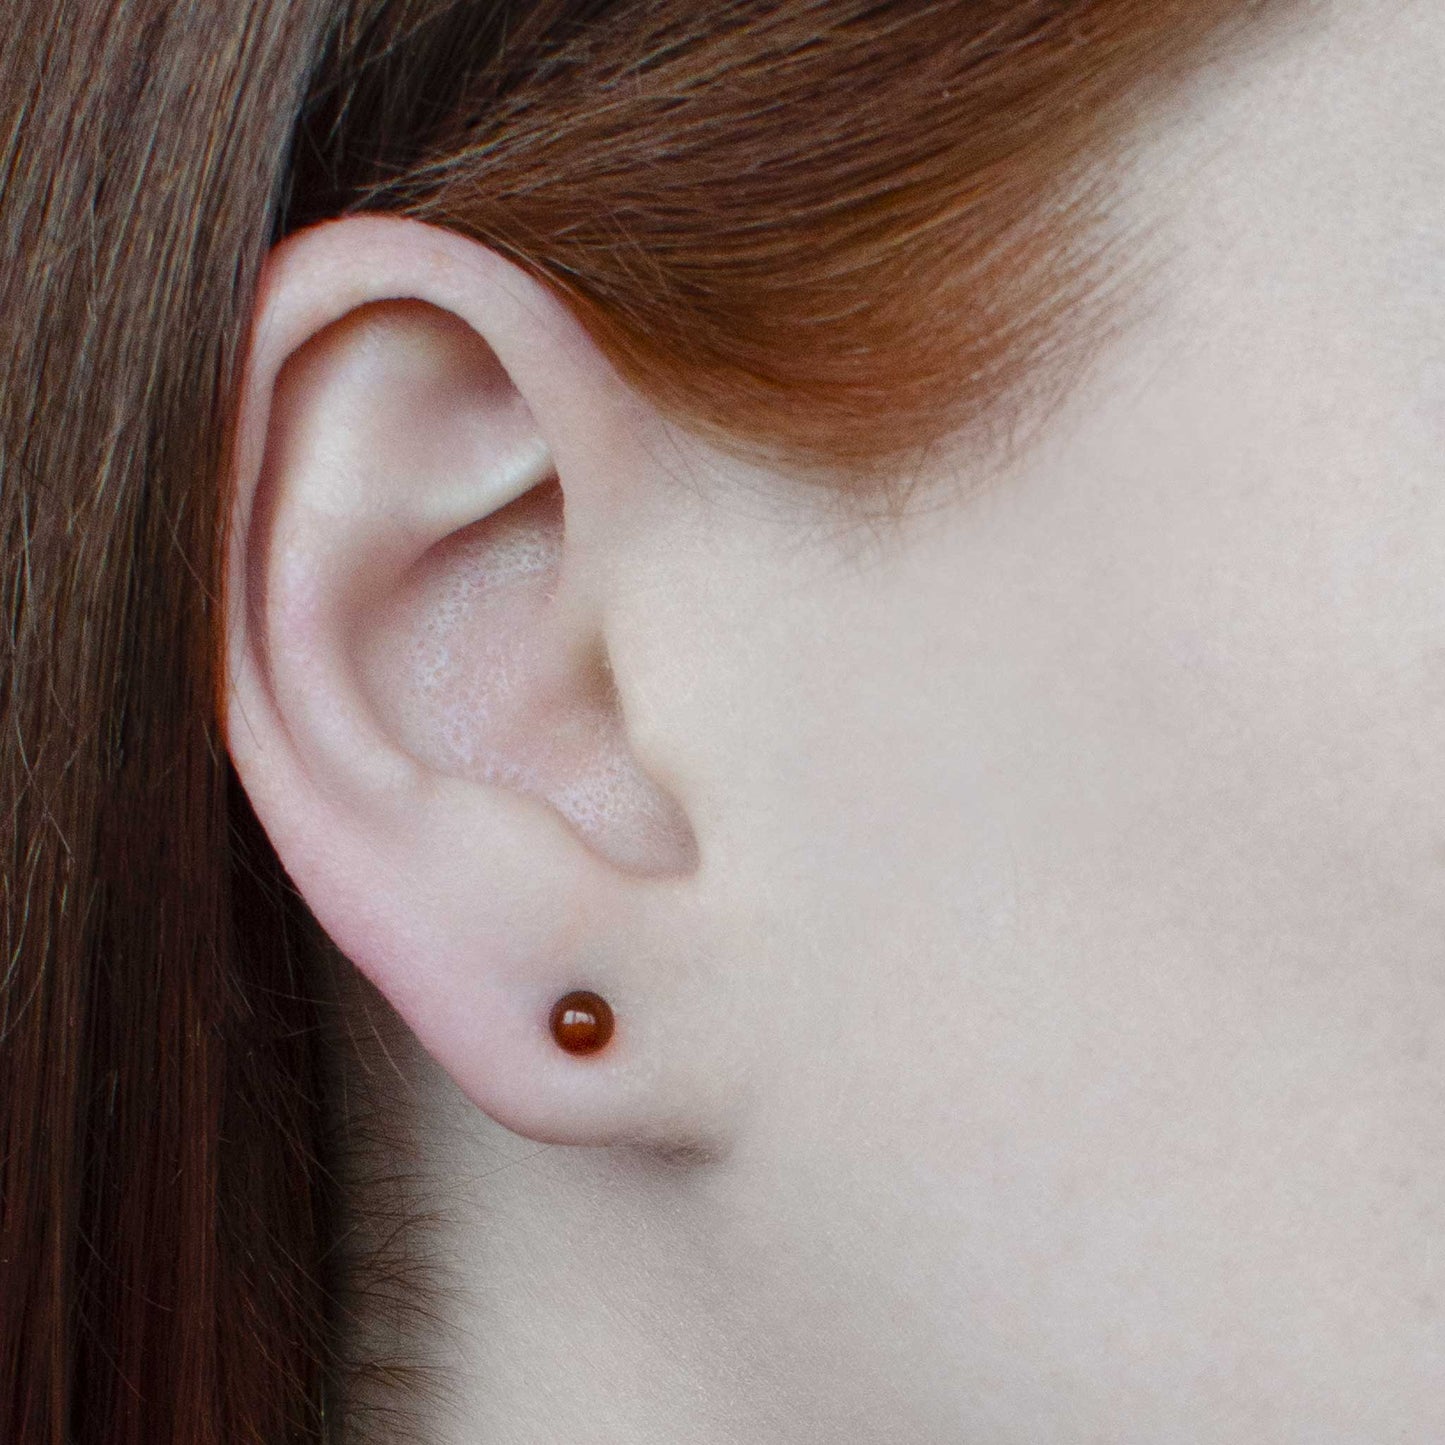 Woman wearing small Carnelian gemstone stud earring in earlobe